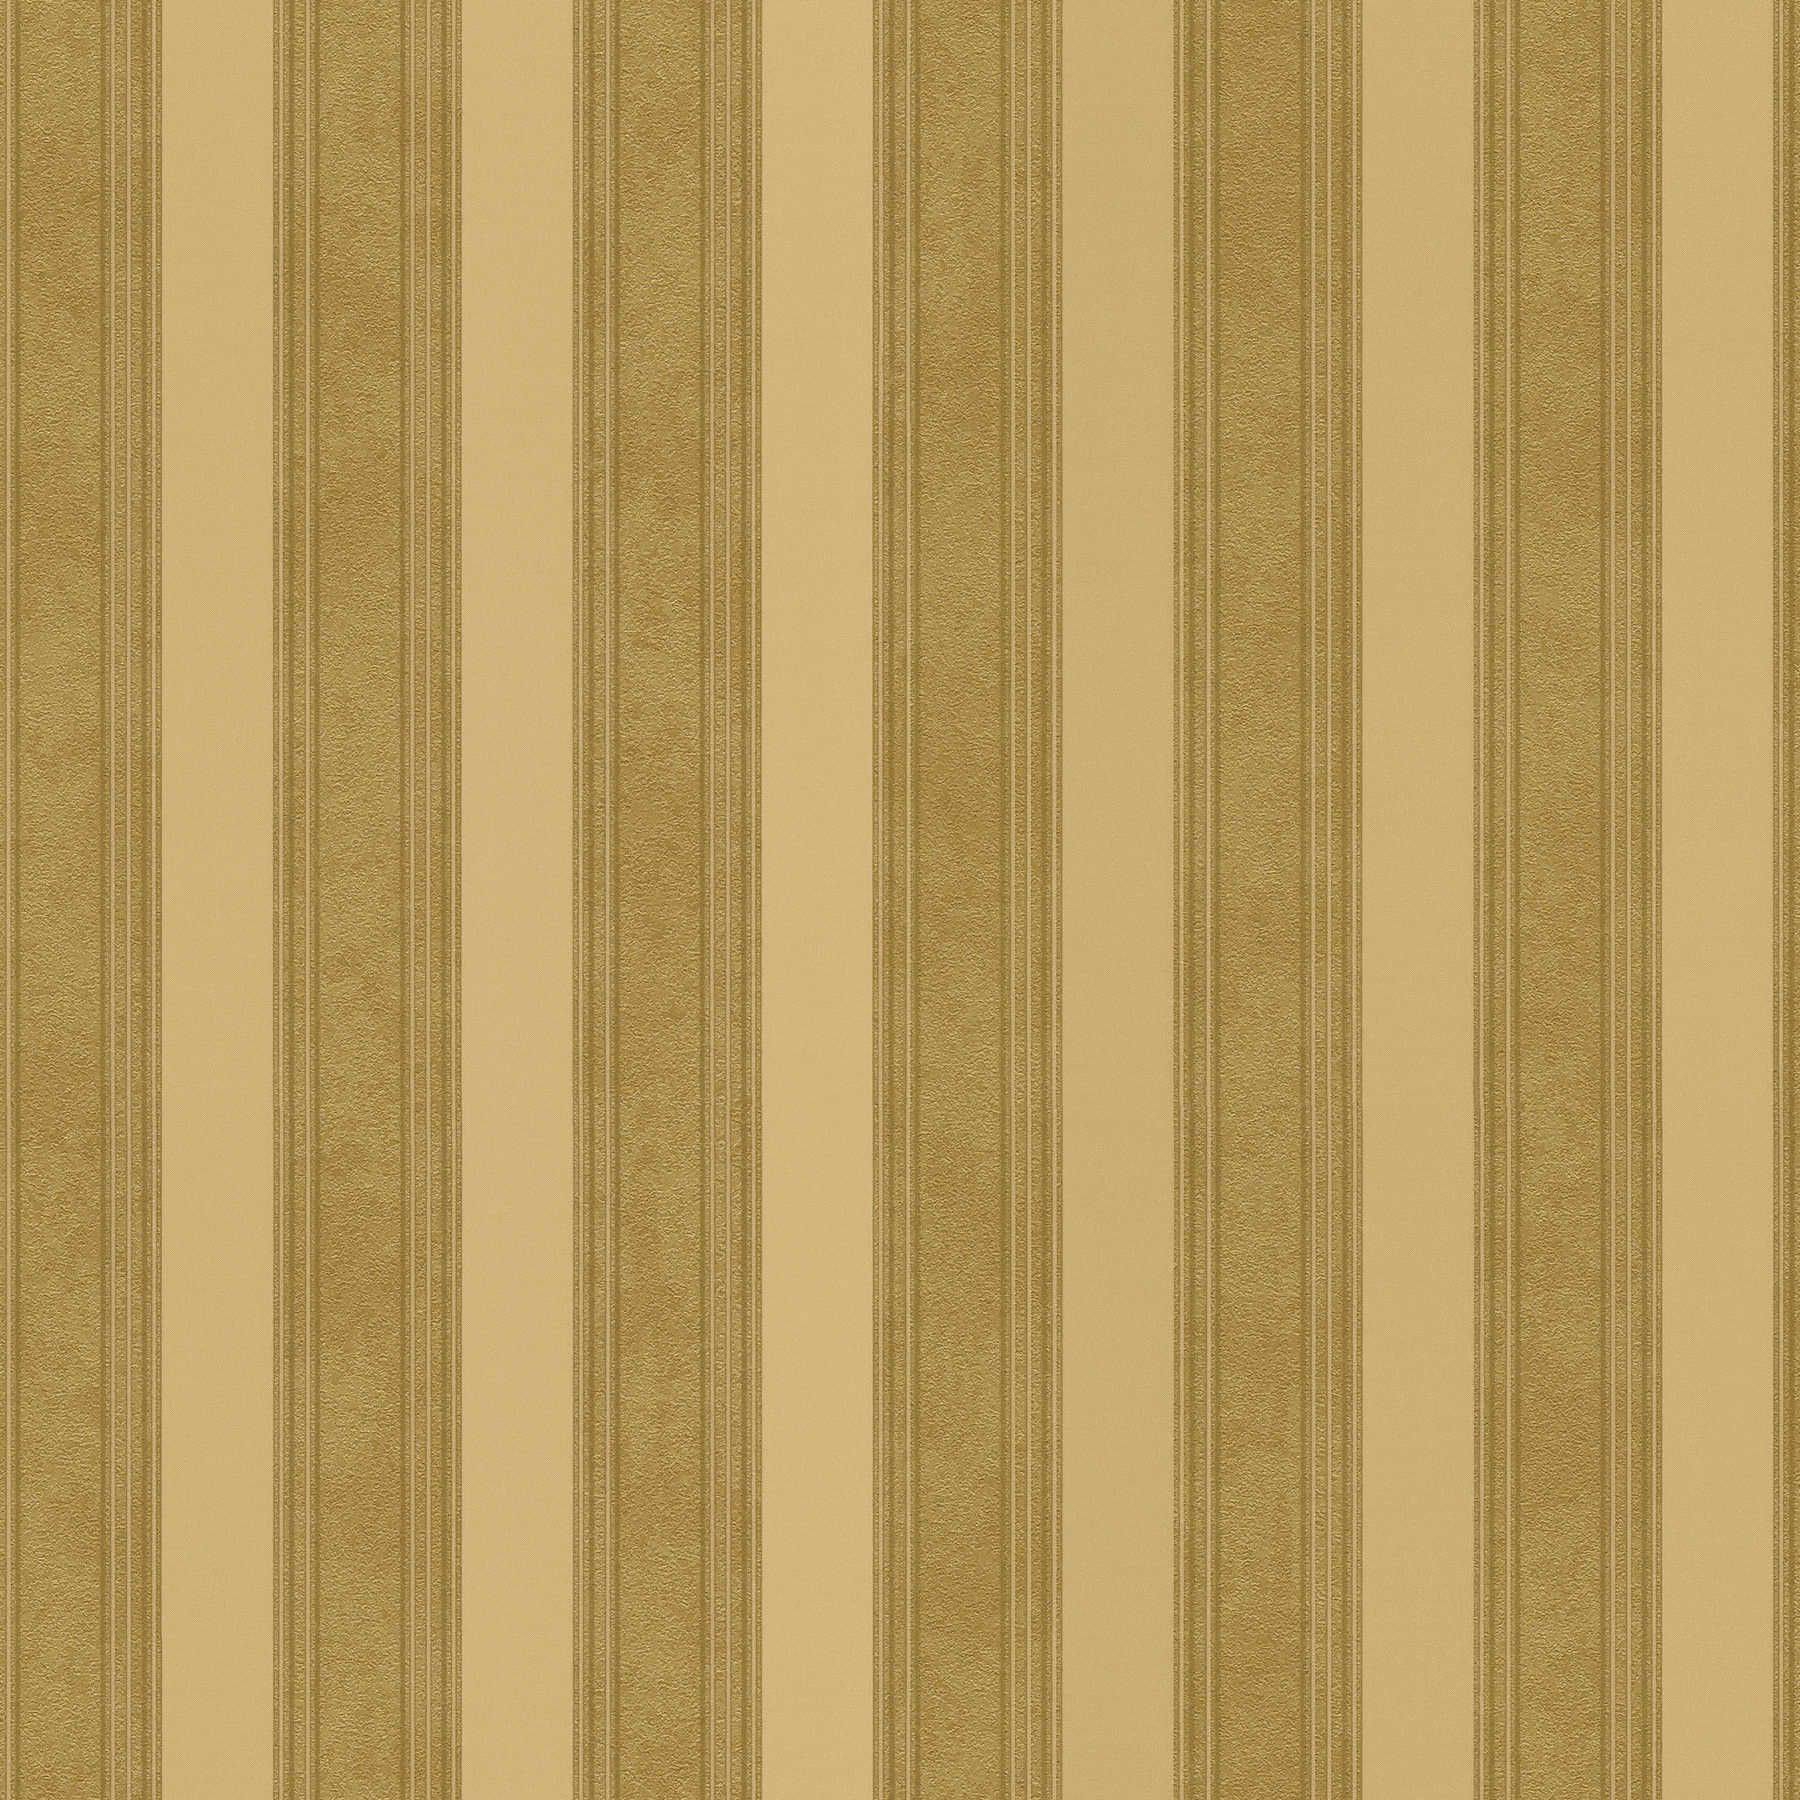         Papier peint doré à rayures avec lignes & effet texturé - Métallique
    